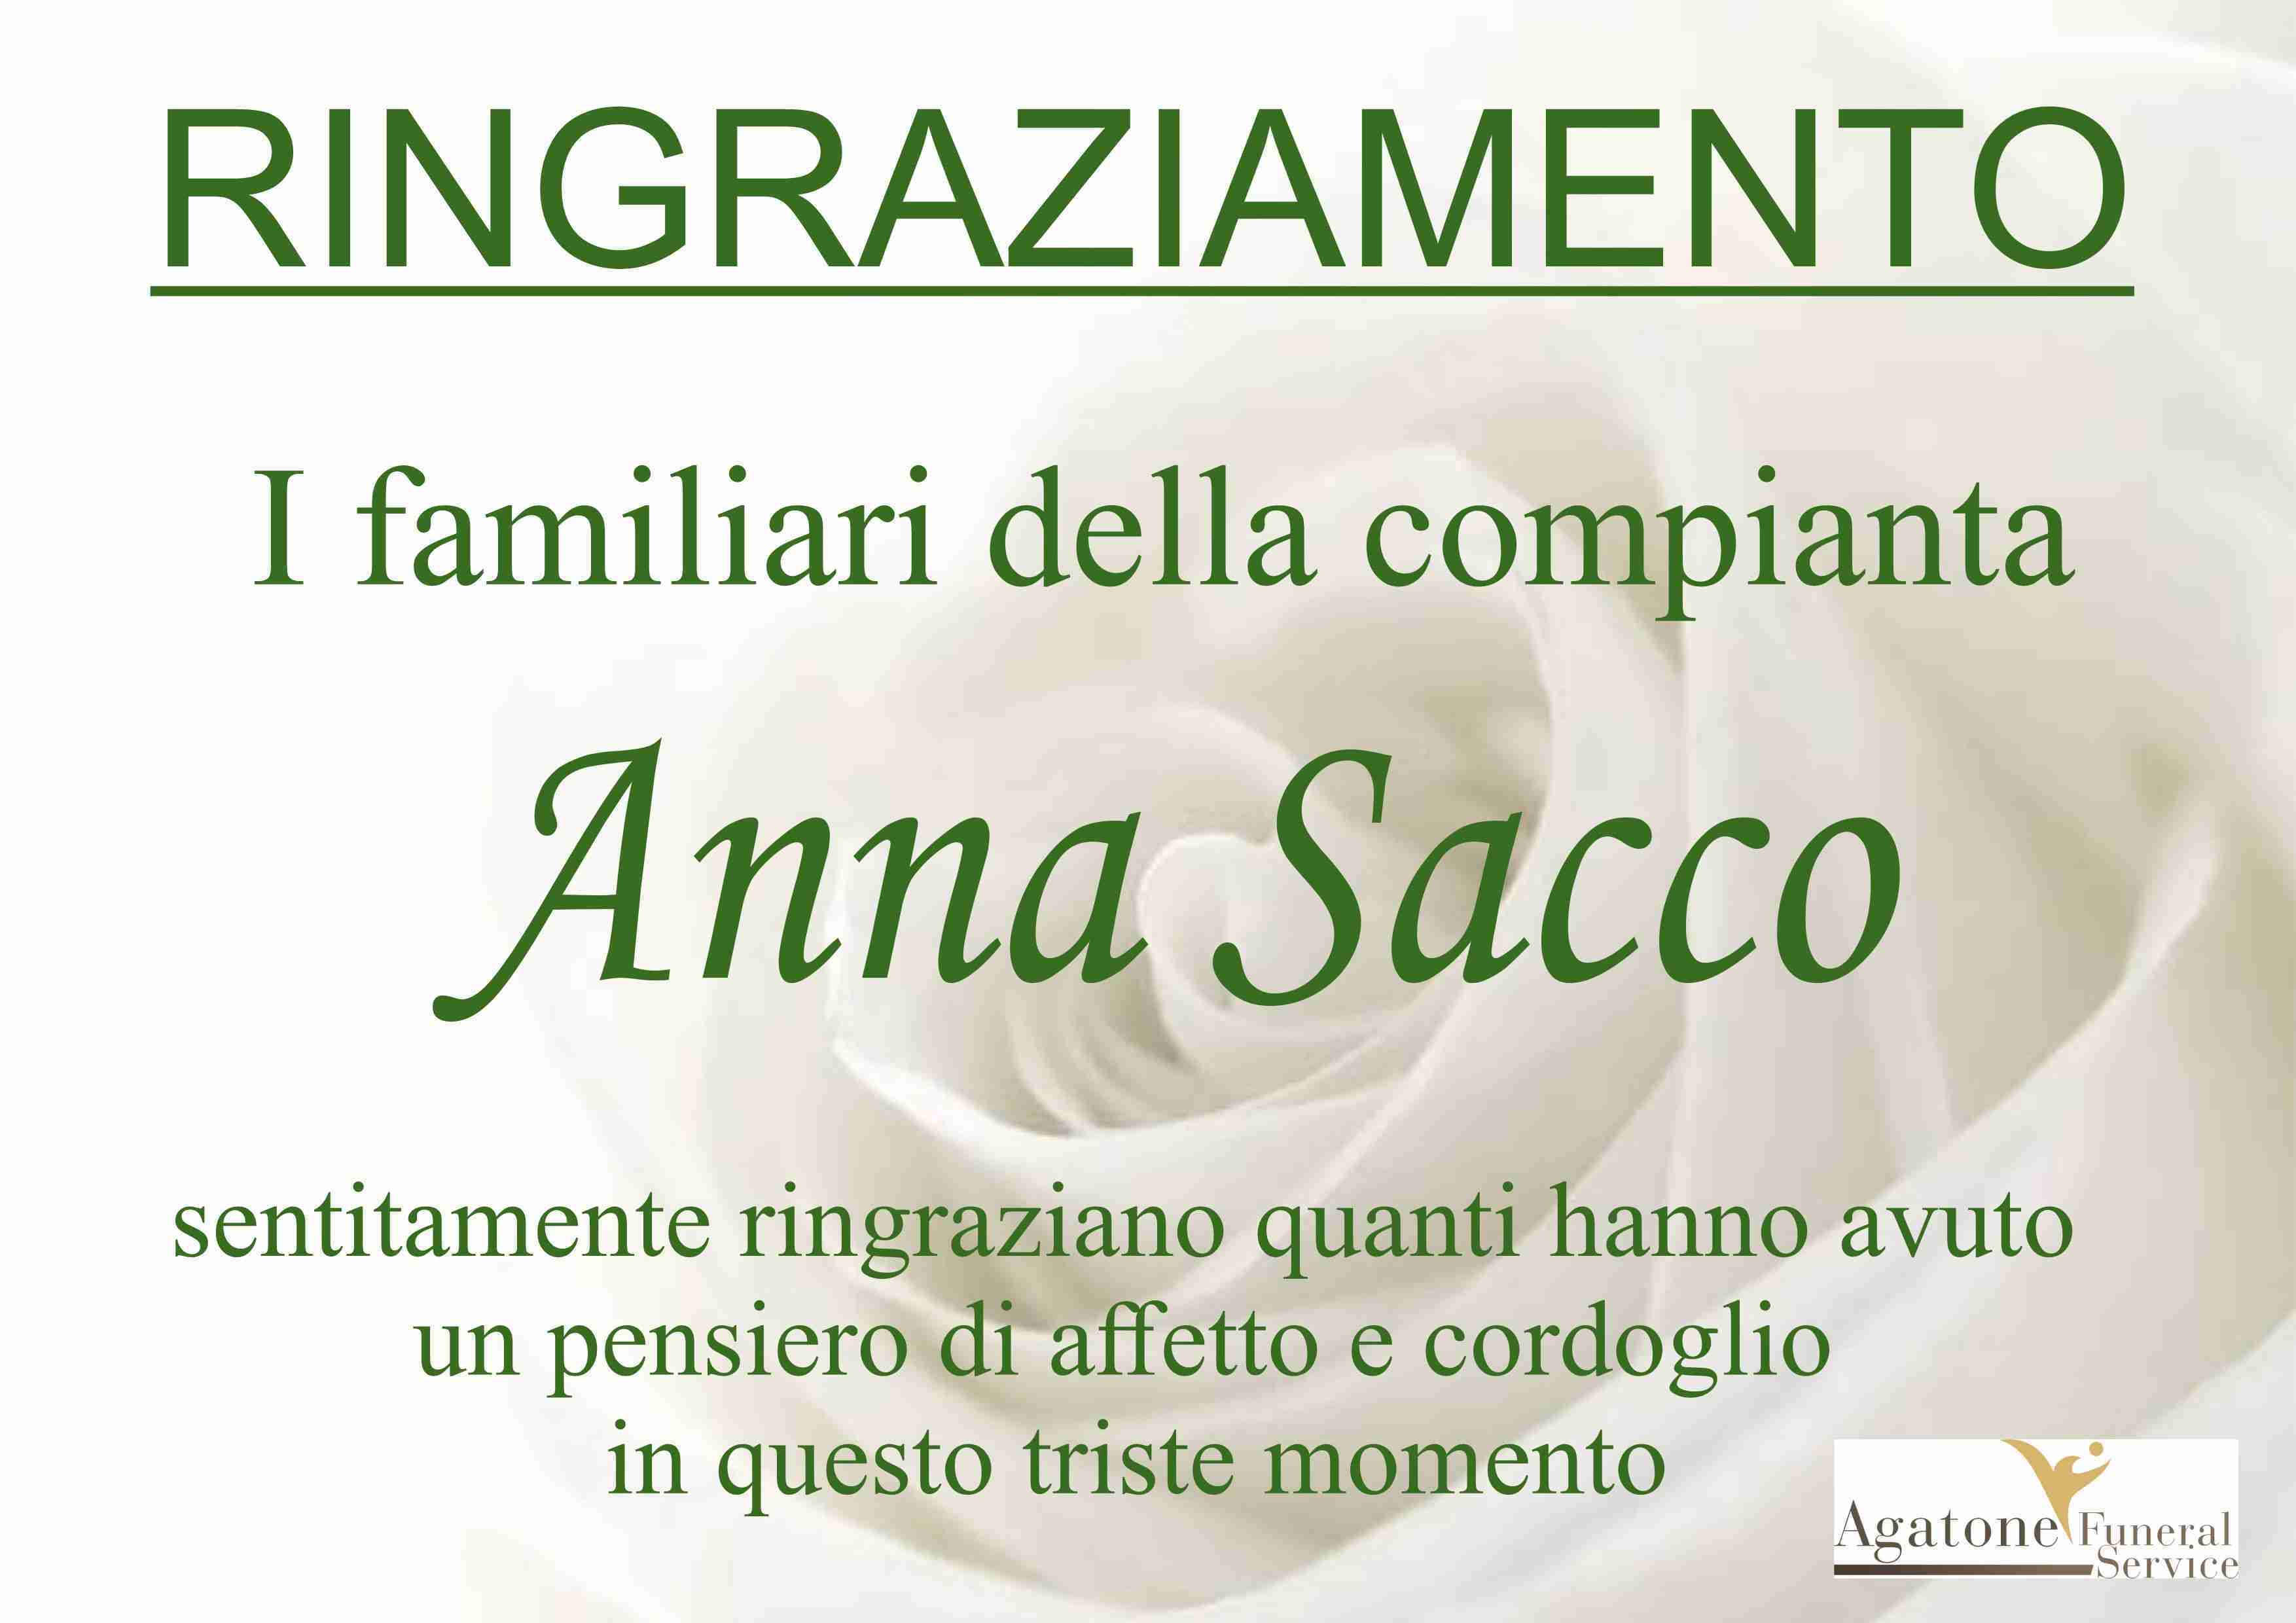 Anna Sacco